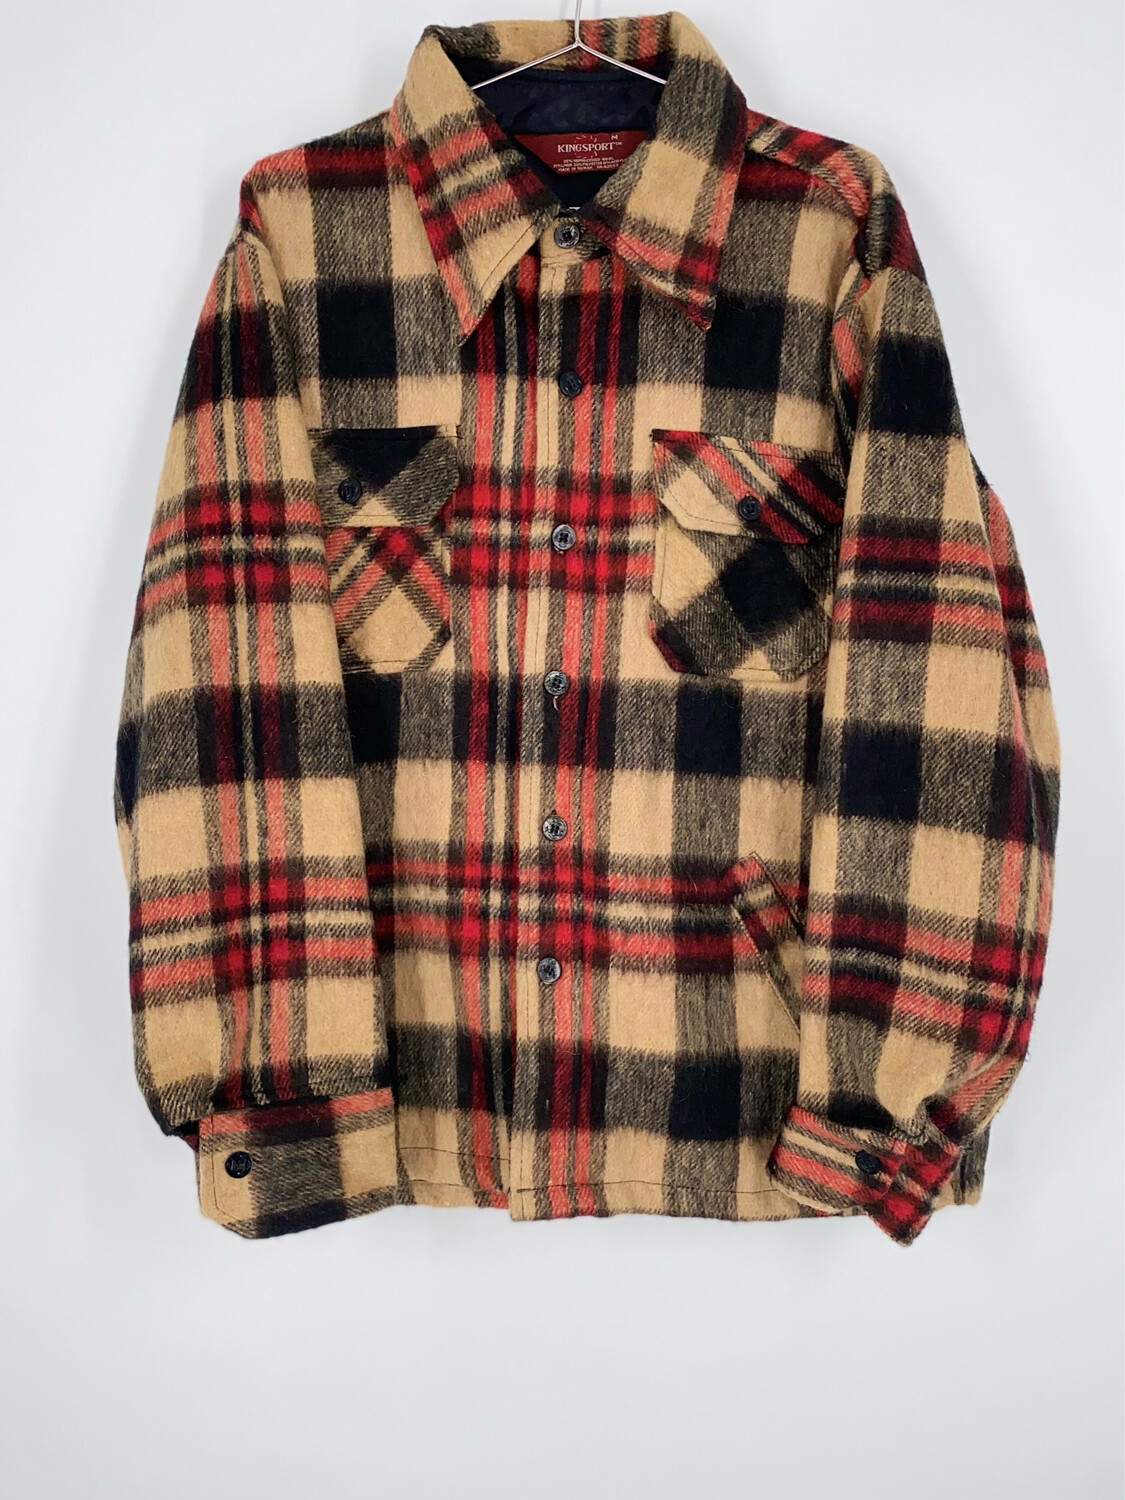 Kingsport Wool Flannel Lightweight Jacket Size M